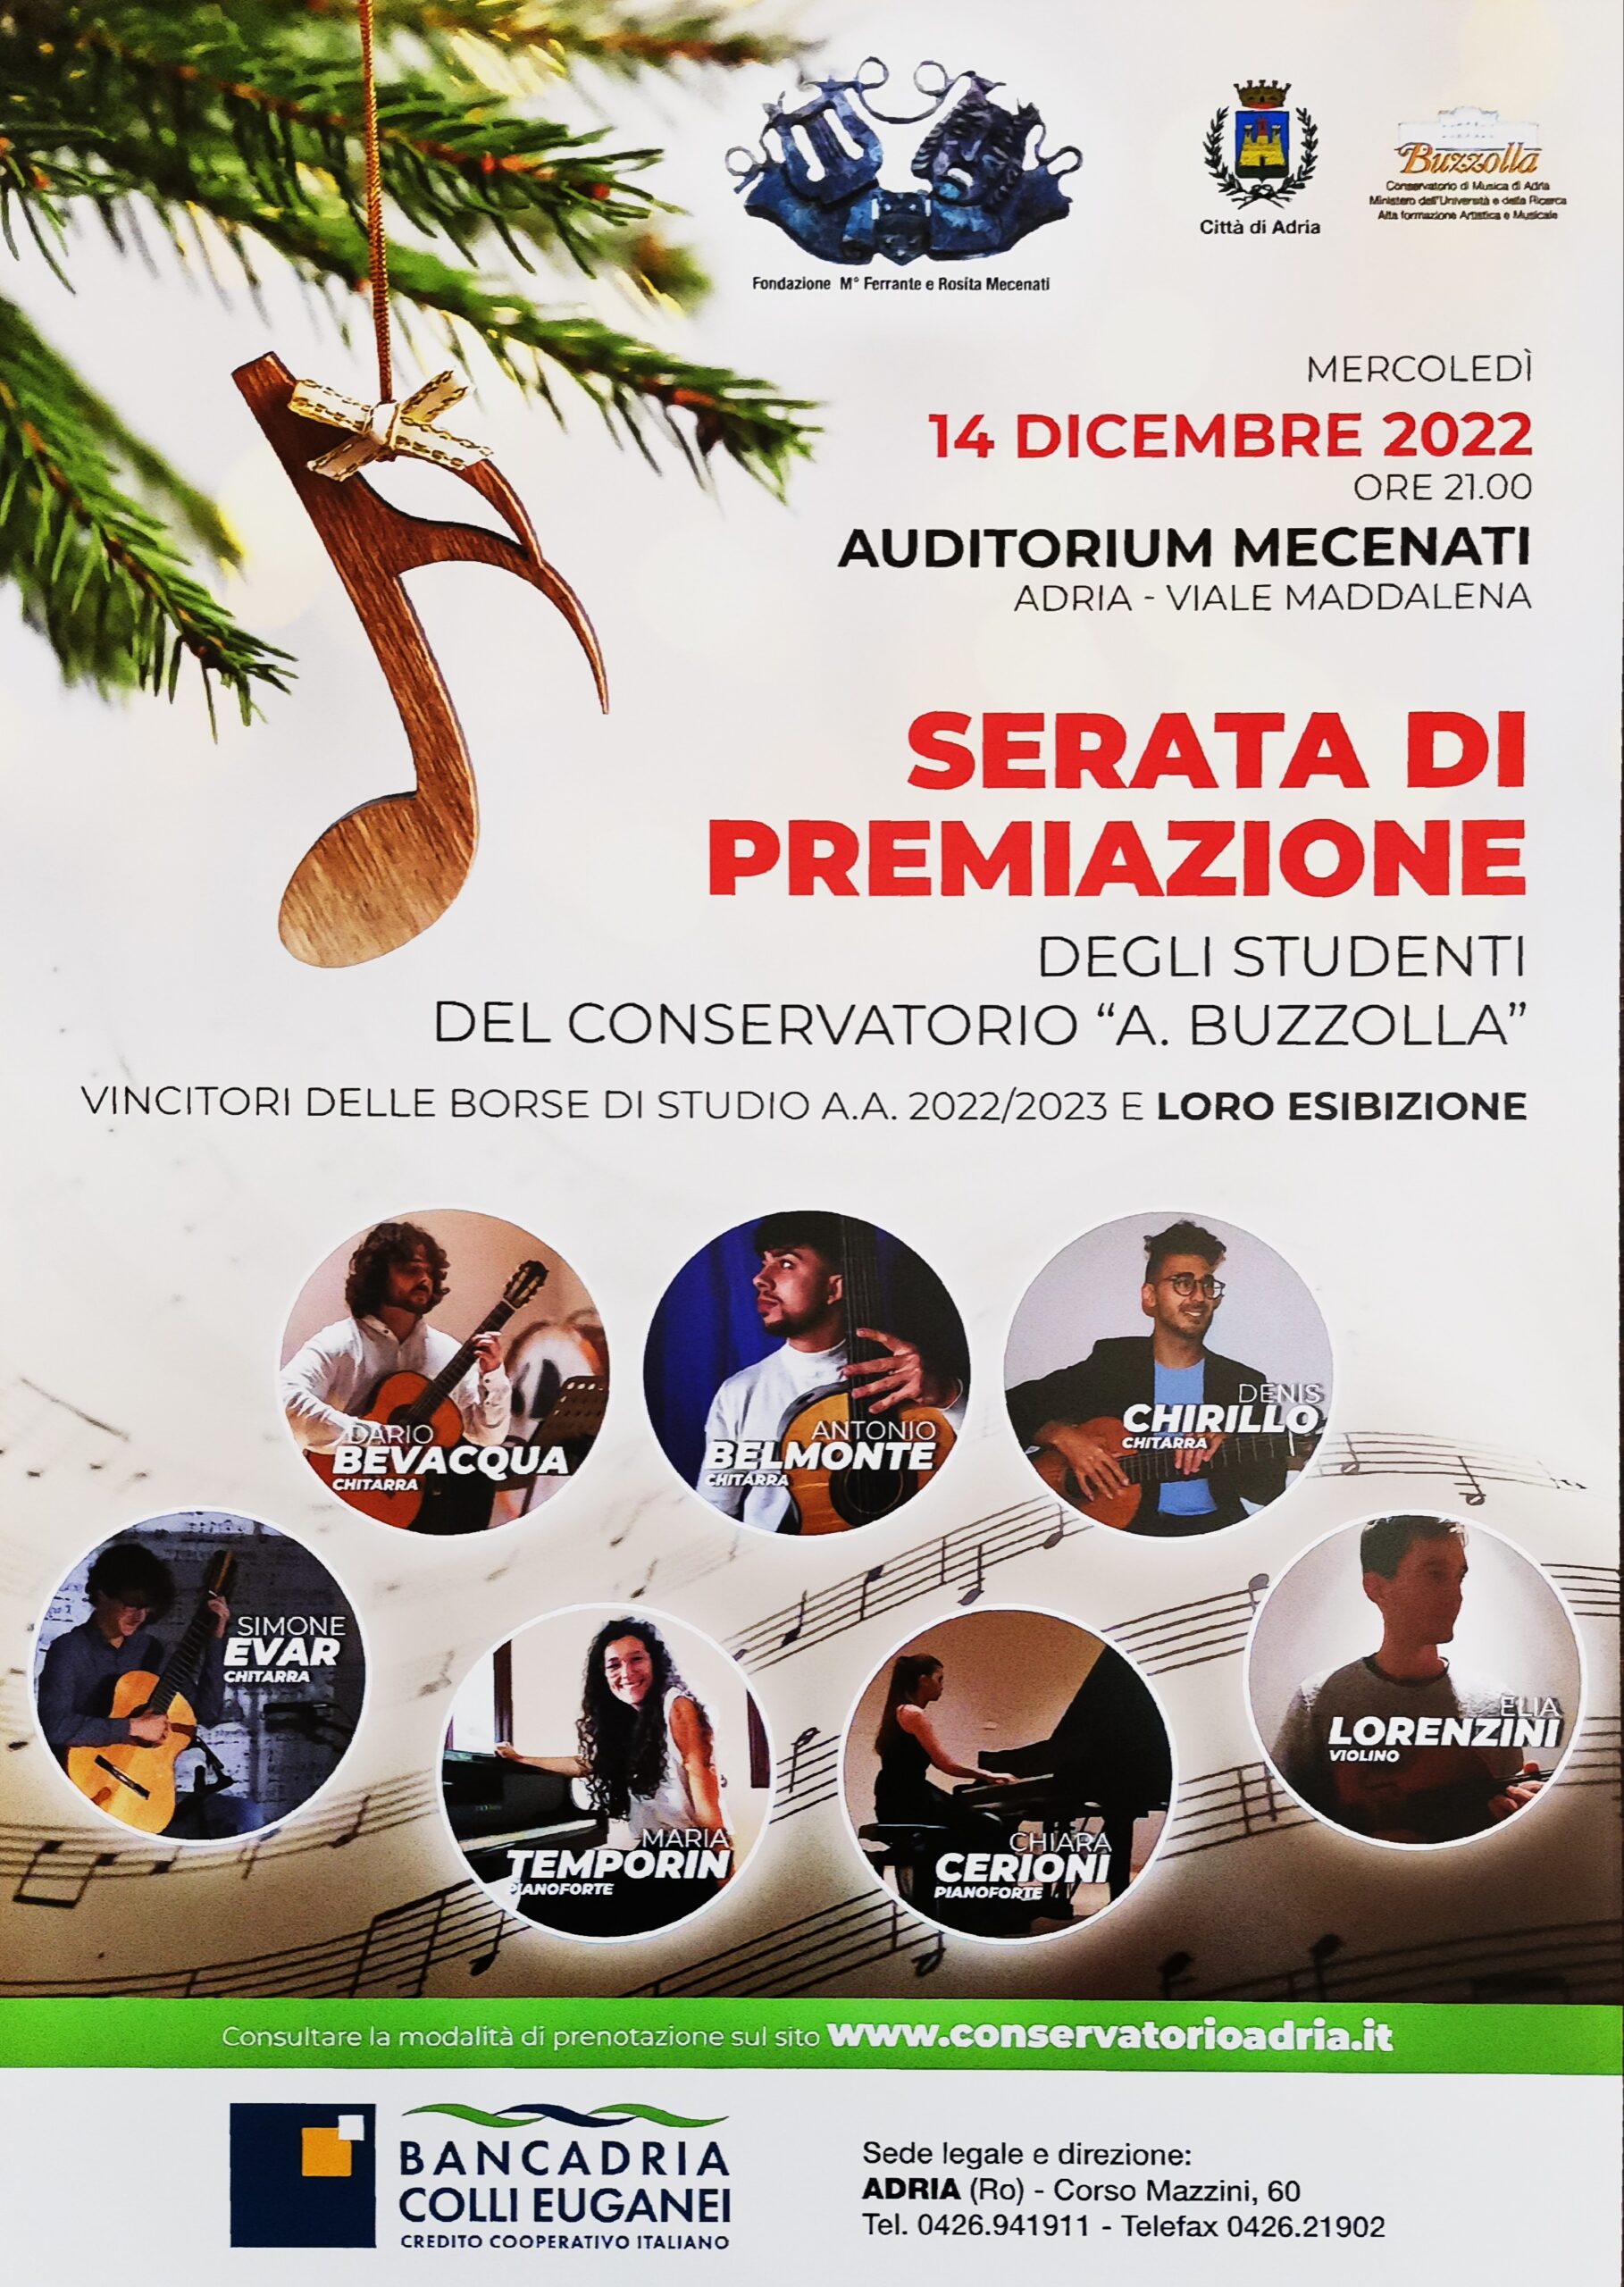 Concerto dei vincitori delle borse di studio della Fondazione Mecenati, 14 dicembre 2022